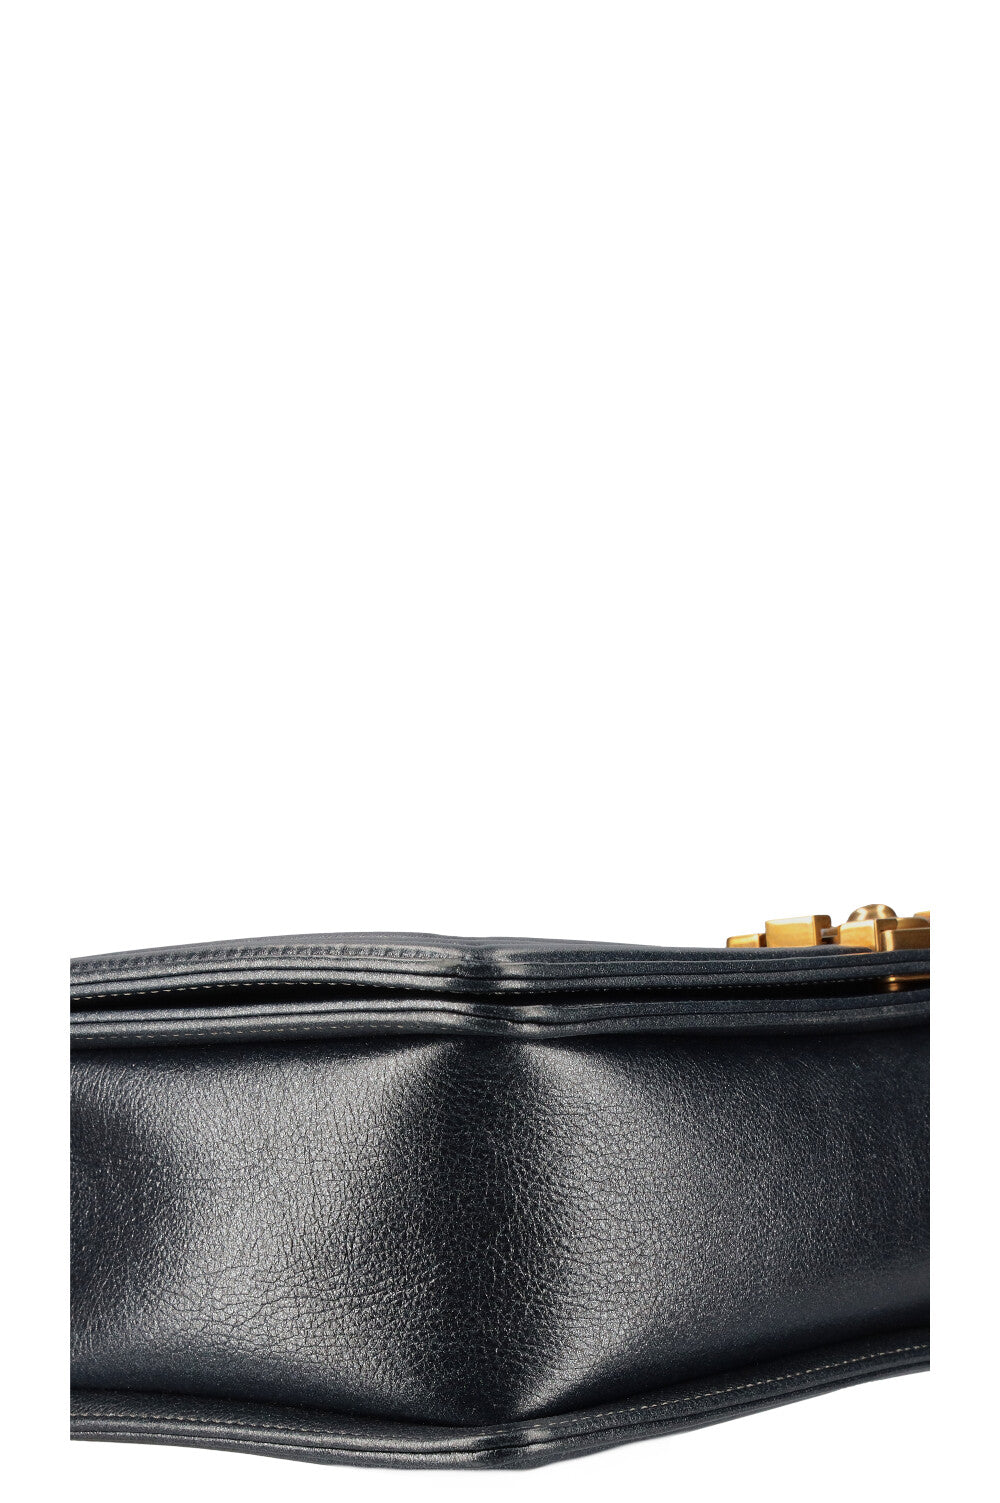 Chanel CHANEL Boy Shanel Bicolor Shoulder Bag Leather Blue x Black P11 –  NUIR VINTAGE